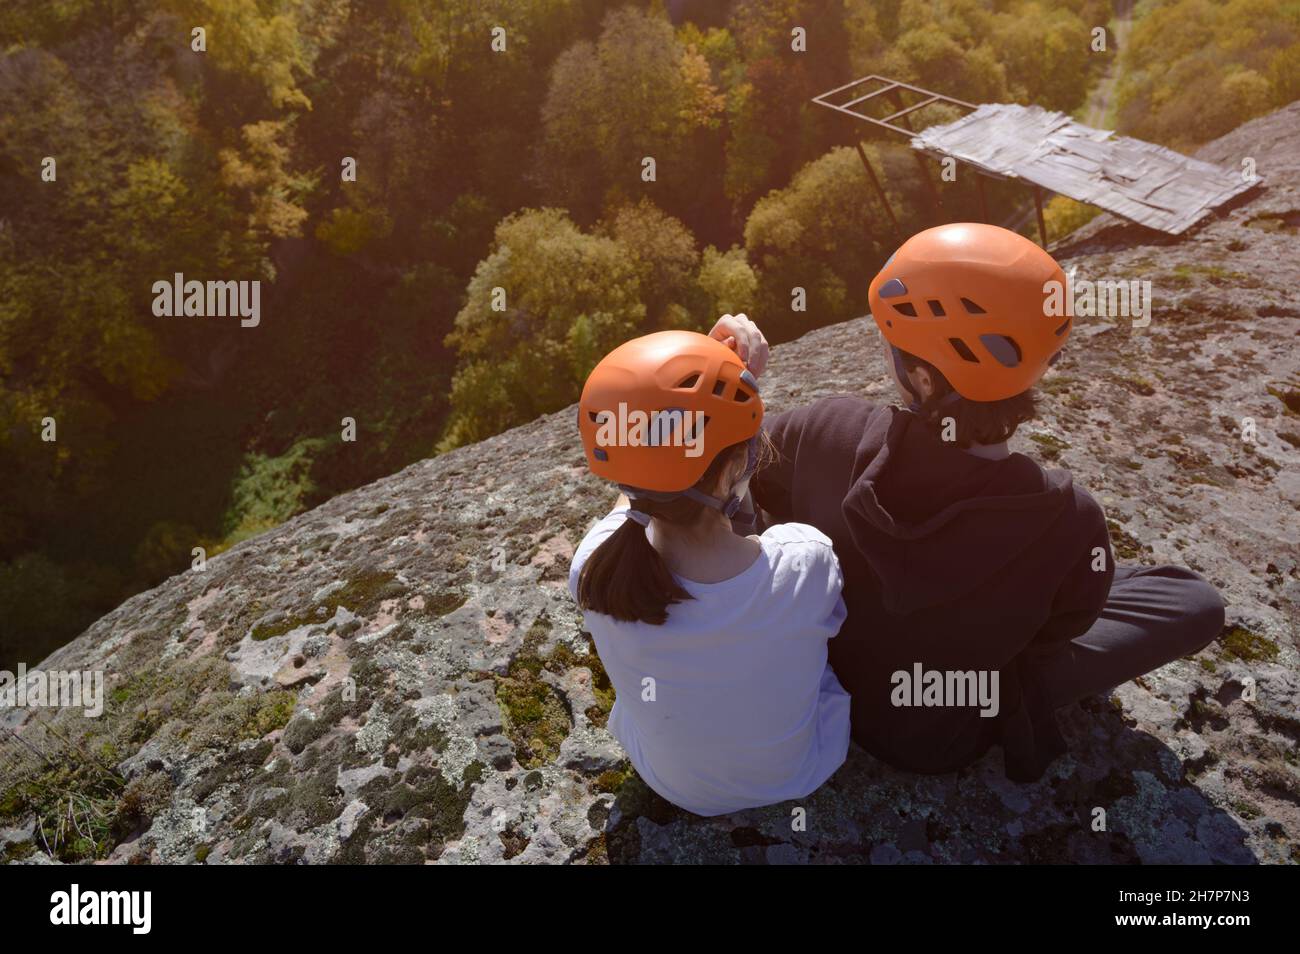 deux jeunes enfants dans un casque orange assis au sommet d'une haute montagne rocheuse avec une forêt en bas Banque D'Images